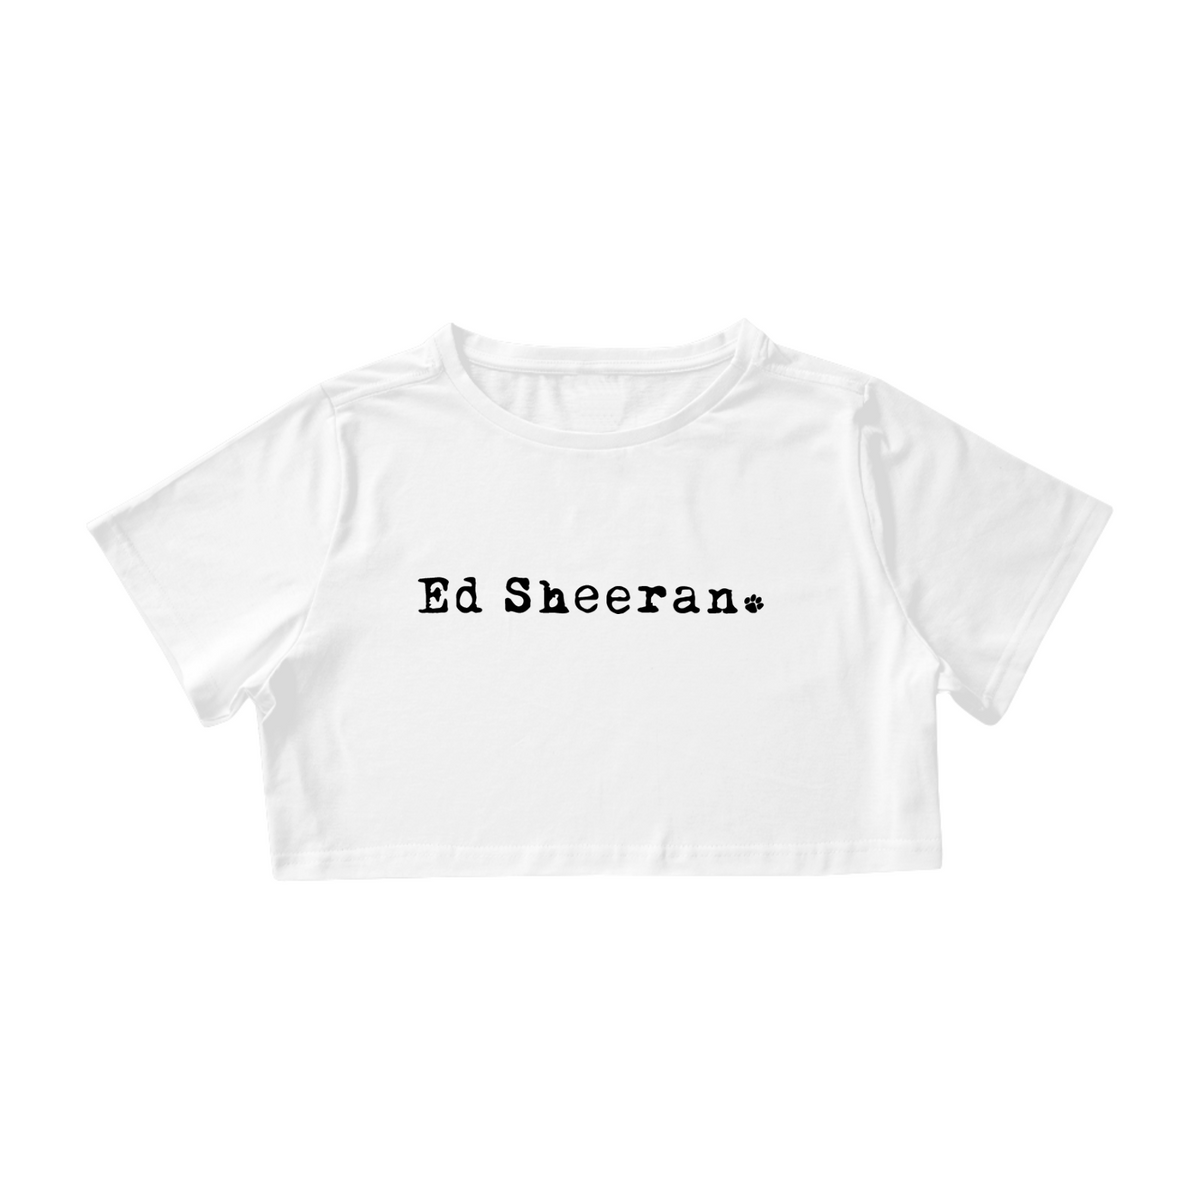 Nome do produto: Cropped - Ed Sheeran